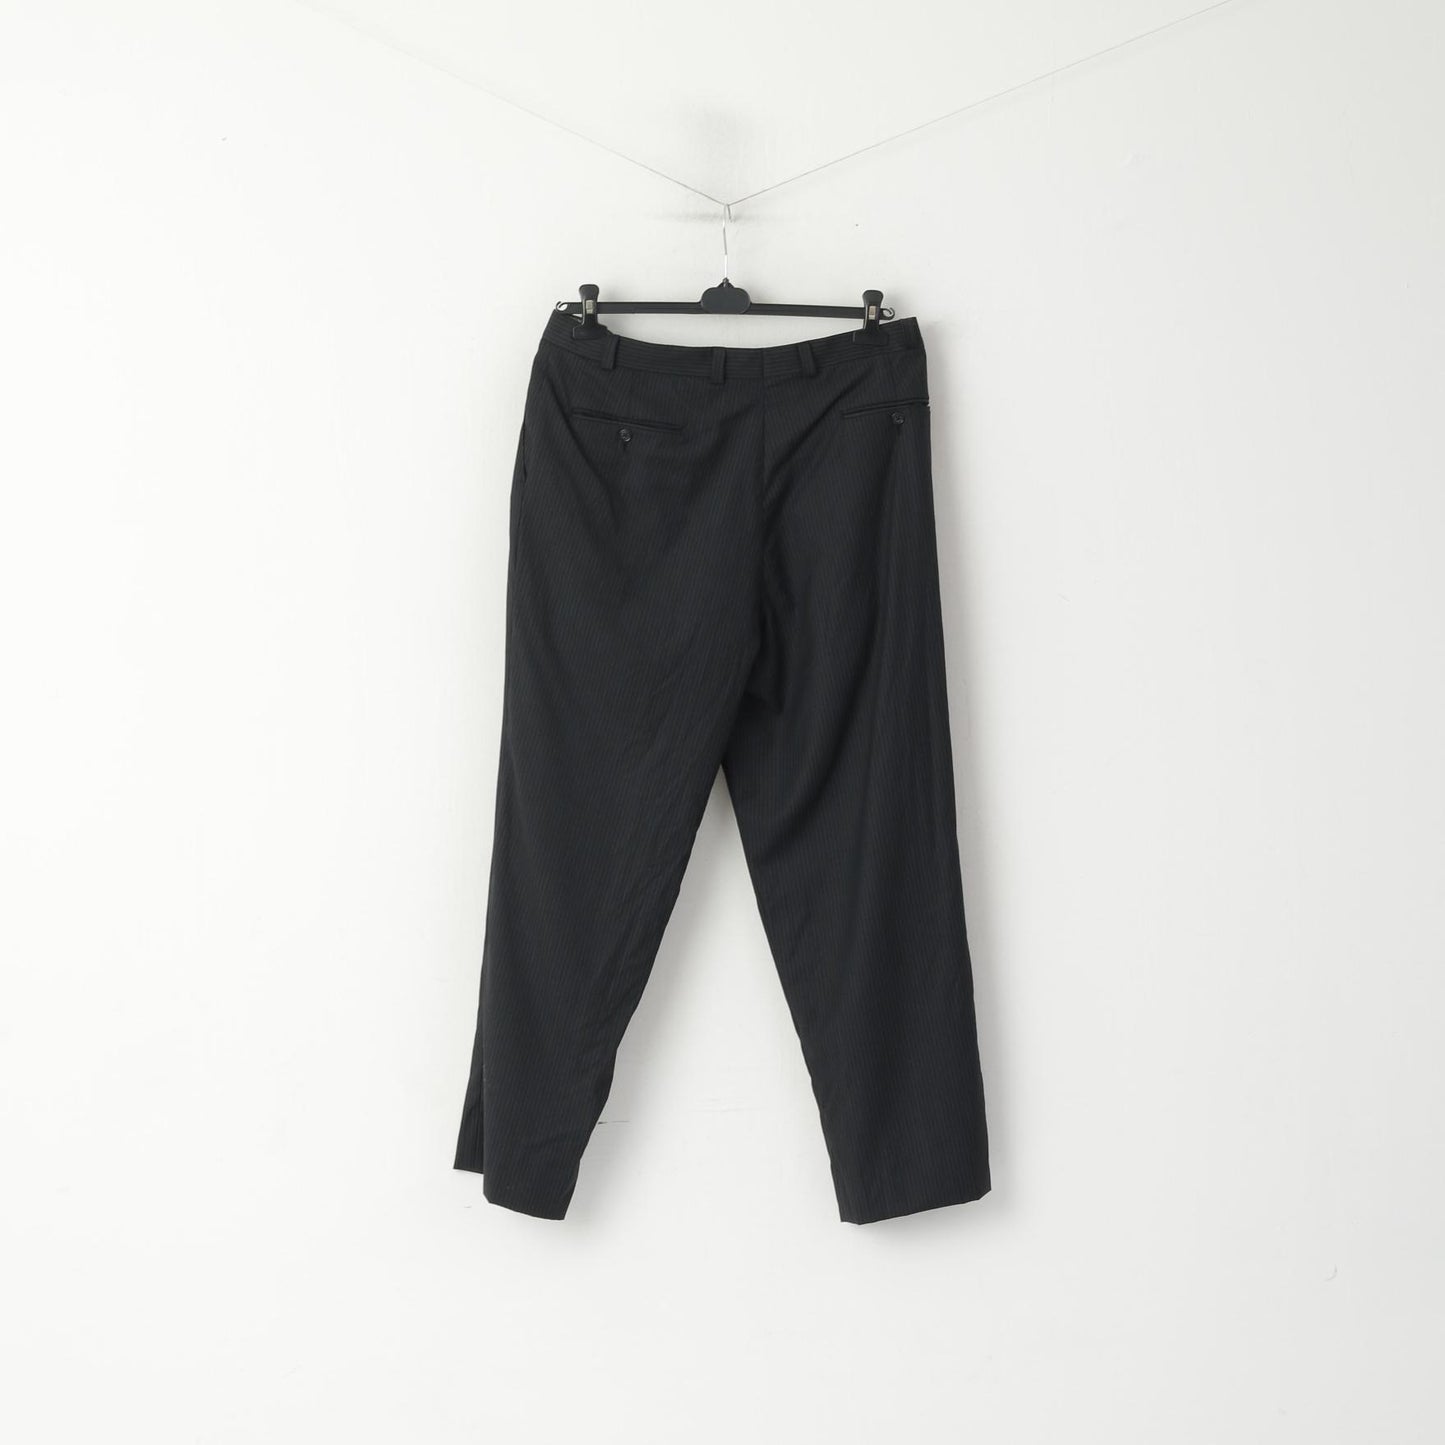 Pantaloni Calvin Klein Uomo 38 Pantaloni da abito eleganti dritti in lana a righe grigio scuro